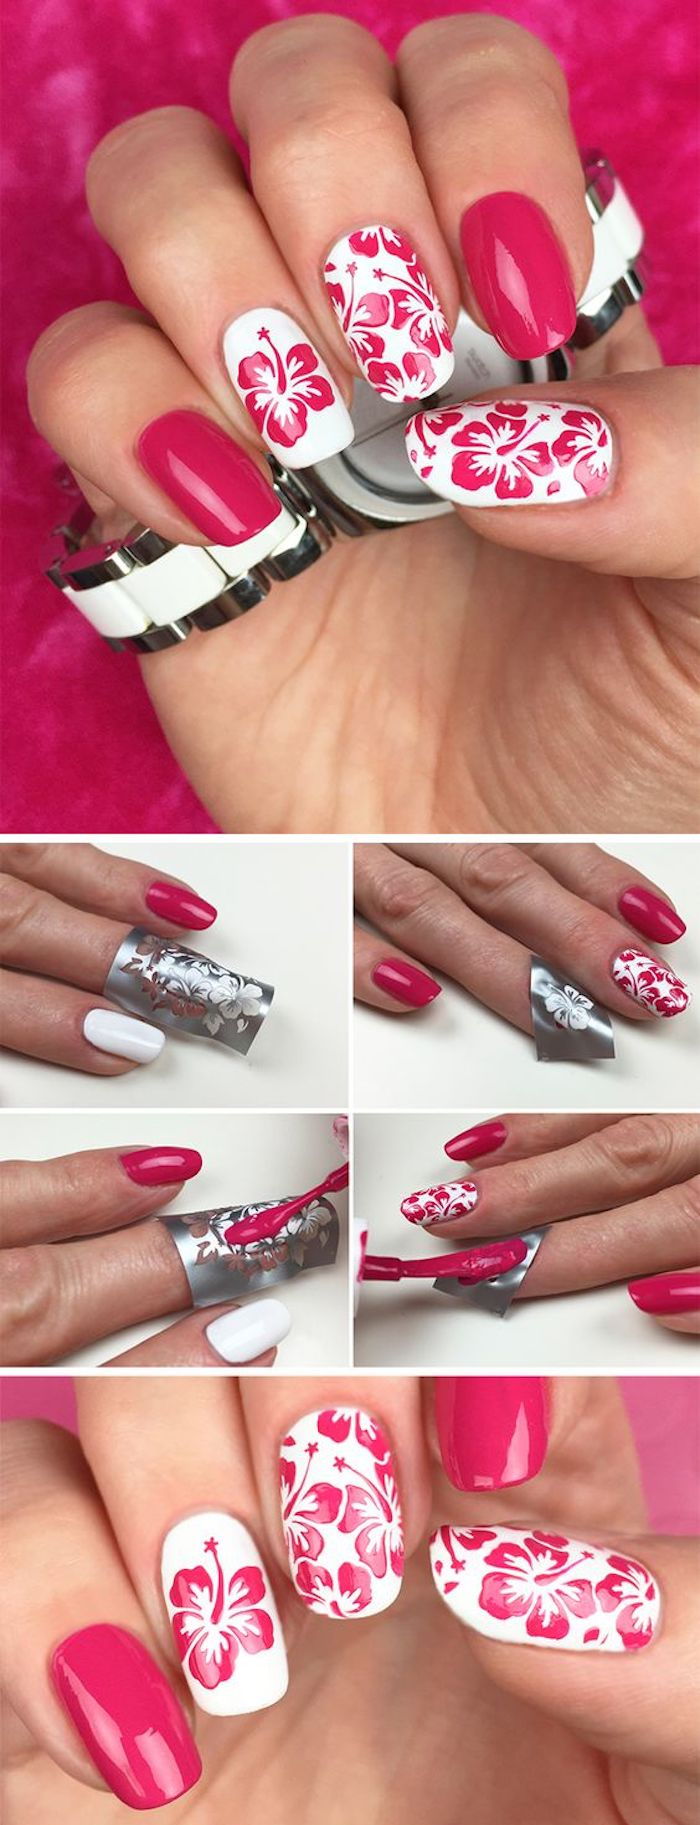 Nails mønster, spiker design i rosa og hvitt med blomster